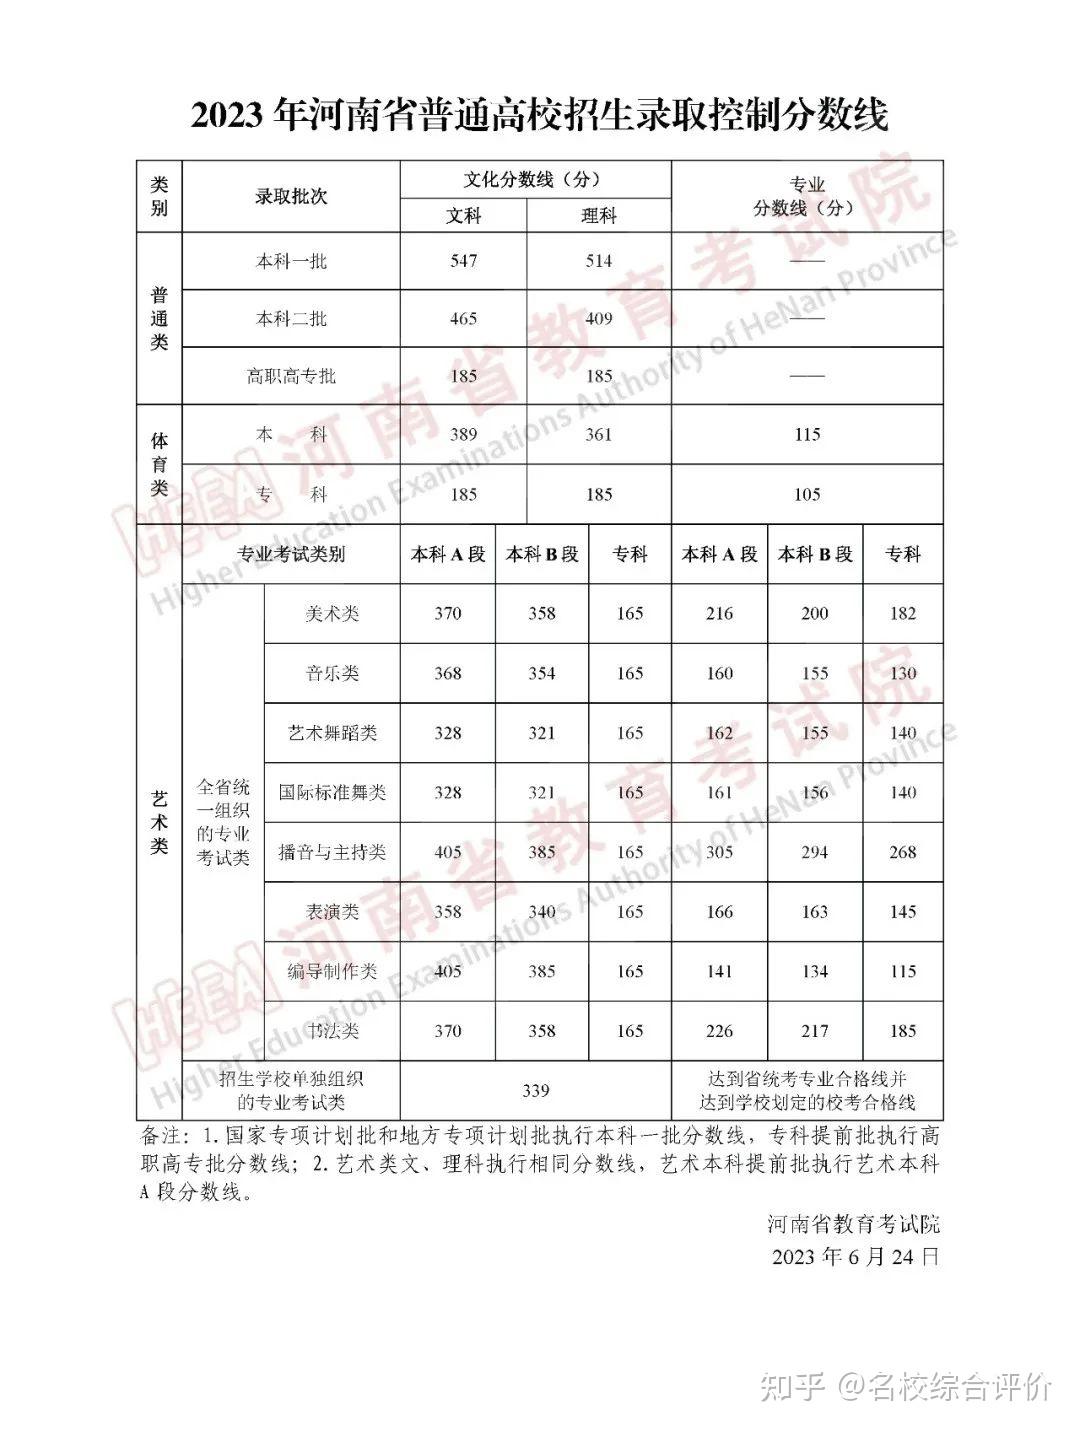 河南省2013年高考分数线